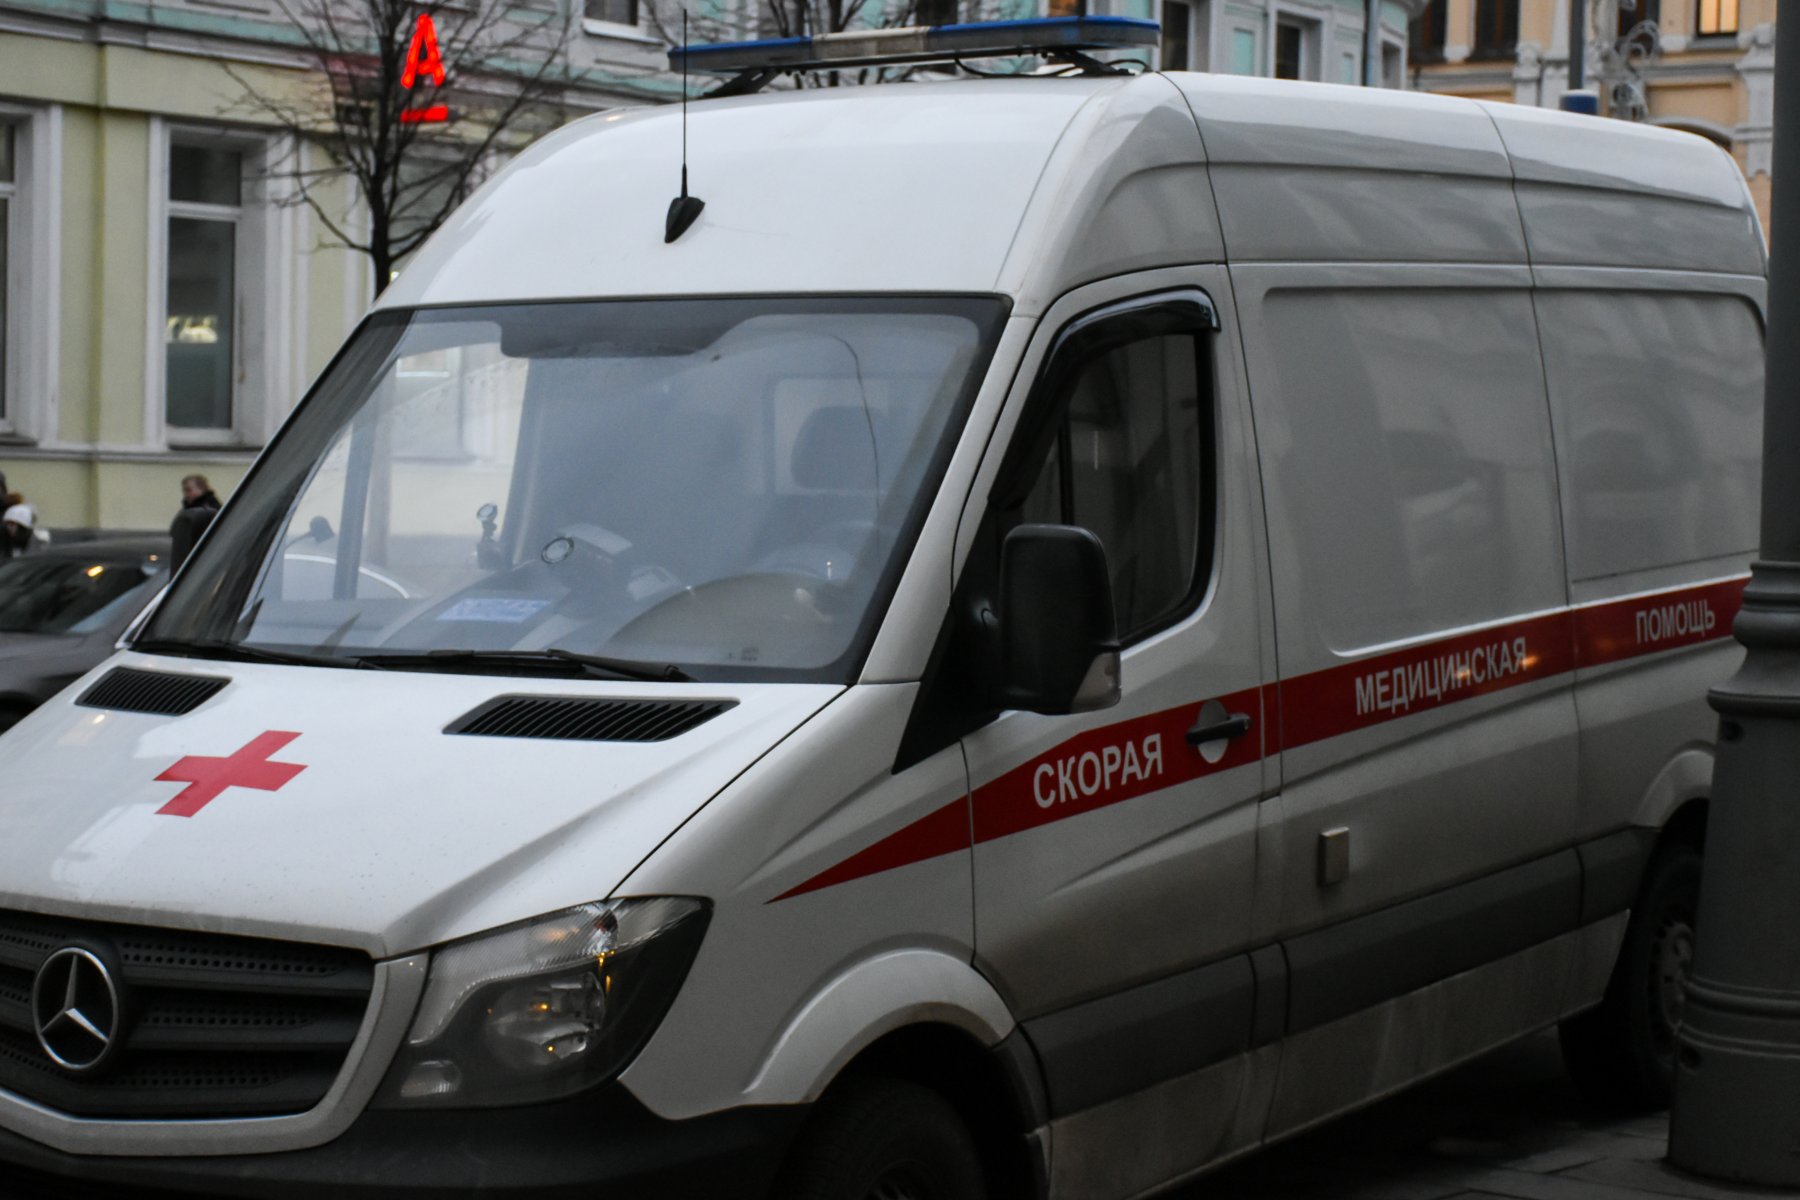 В Пушкино следователи выясняют обстоятельства смерти двух человек в сауне